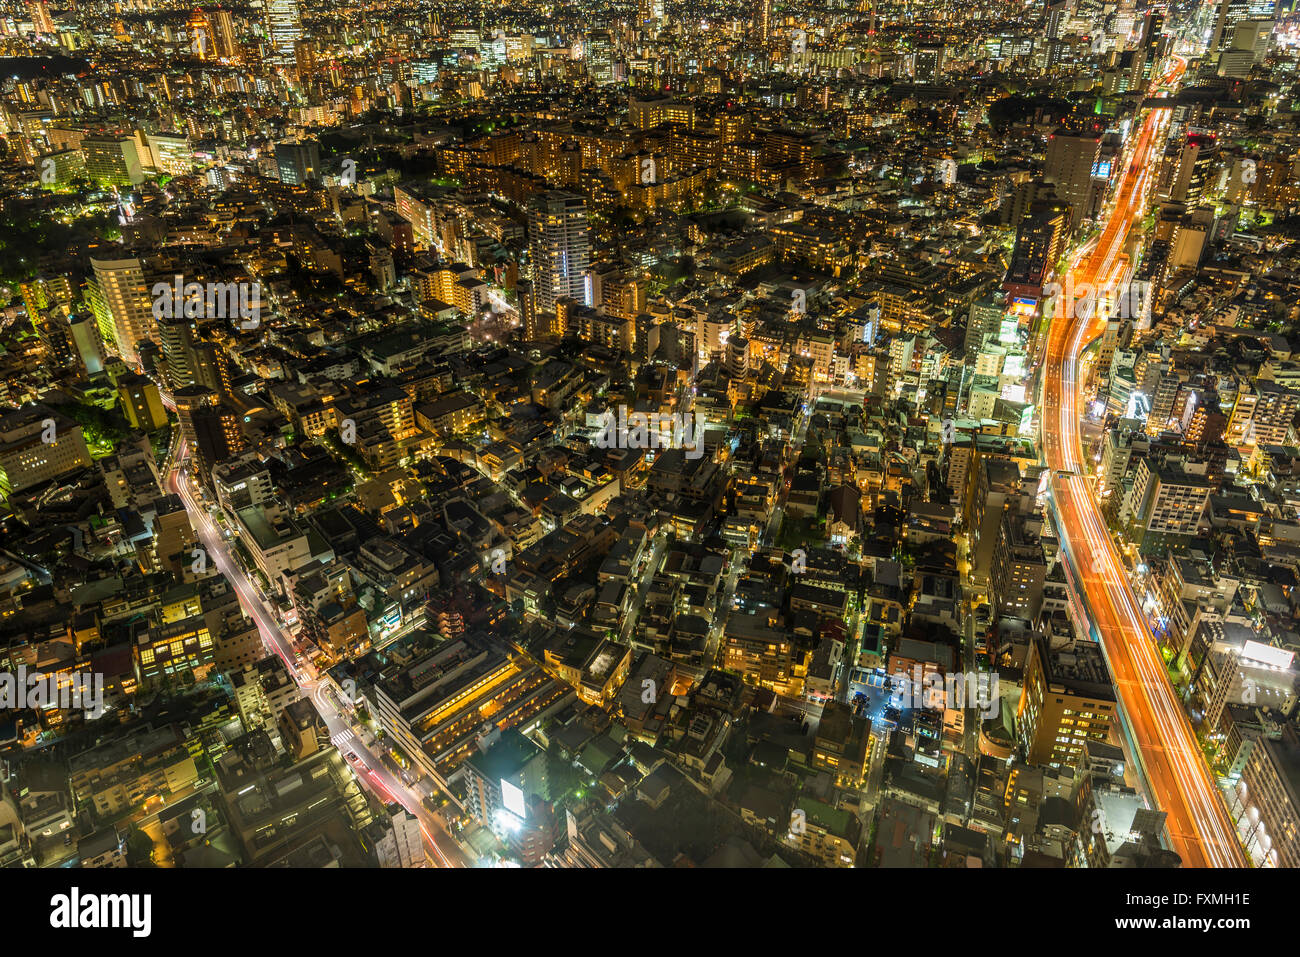 Tokyo at night Stock Photo